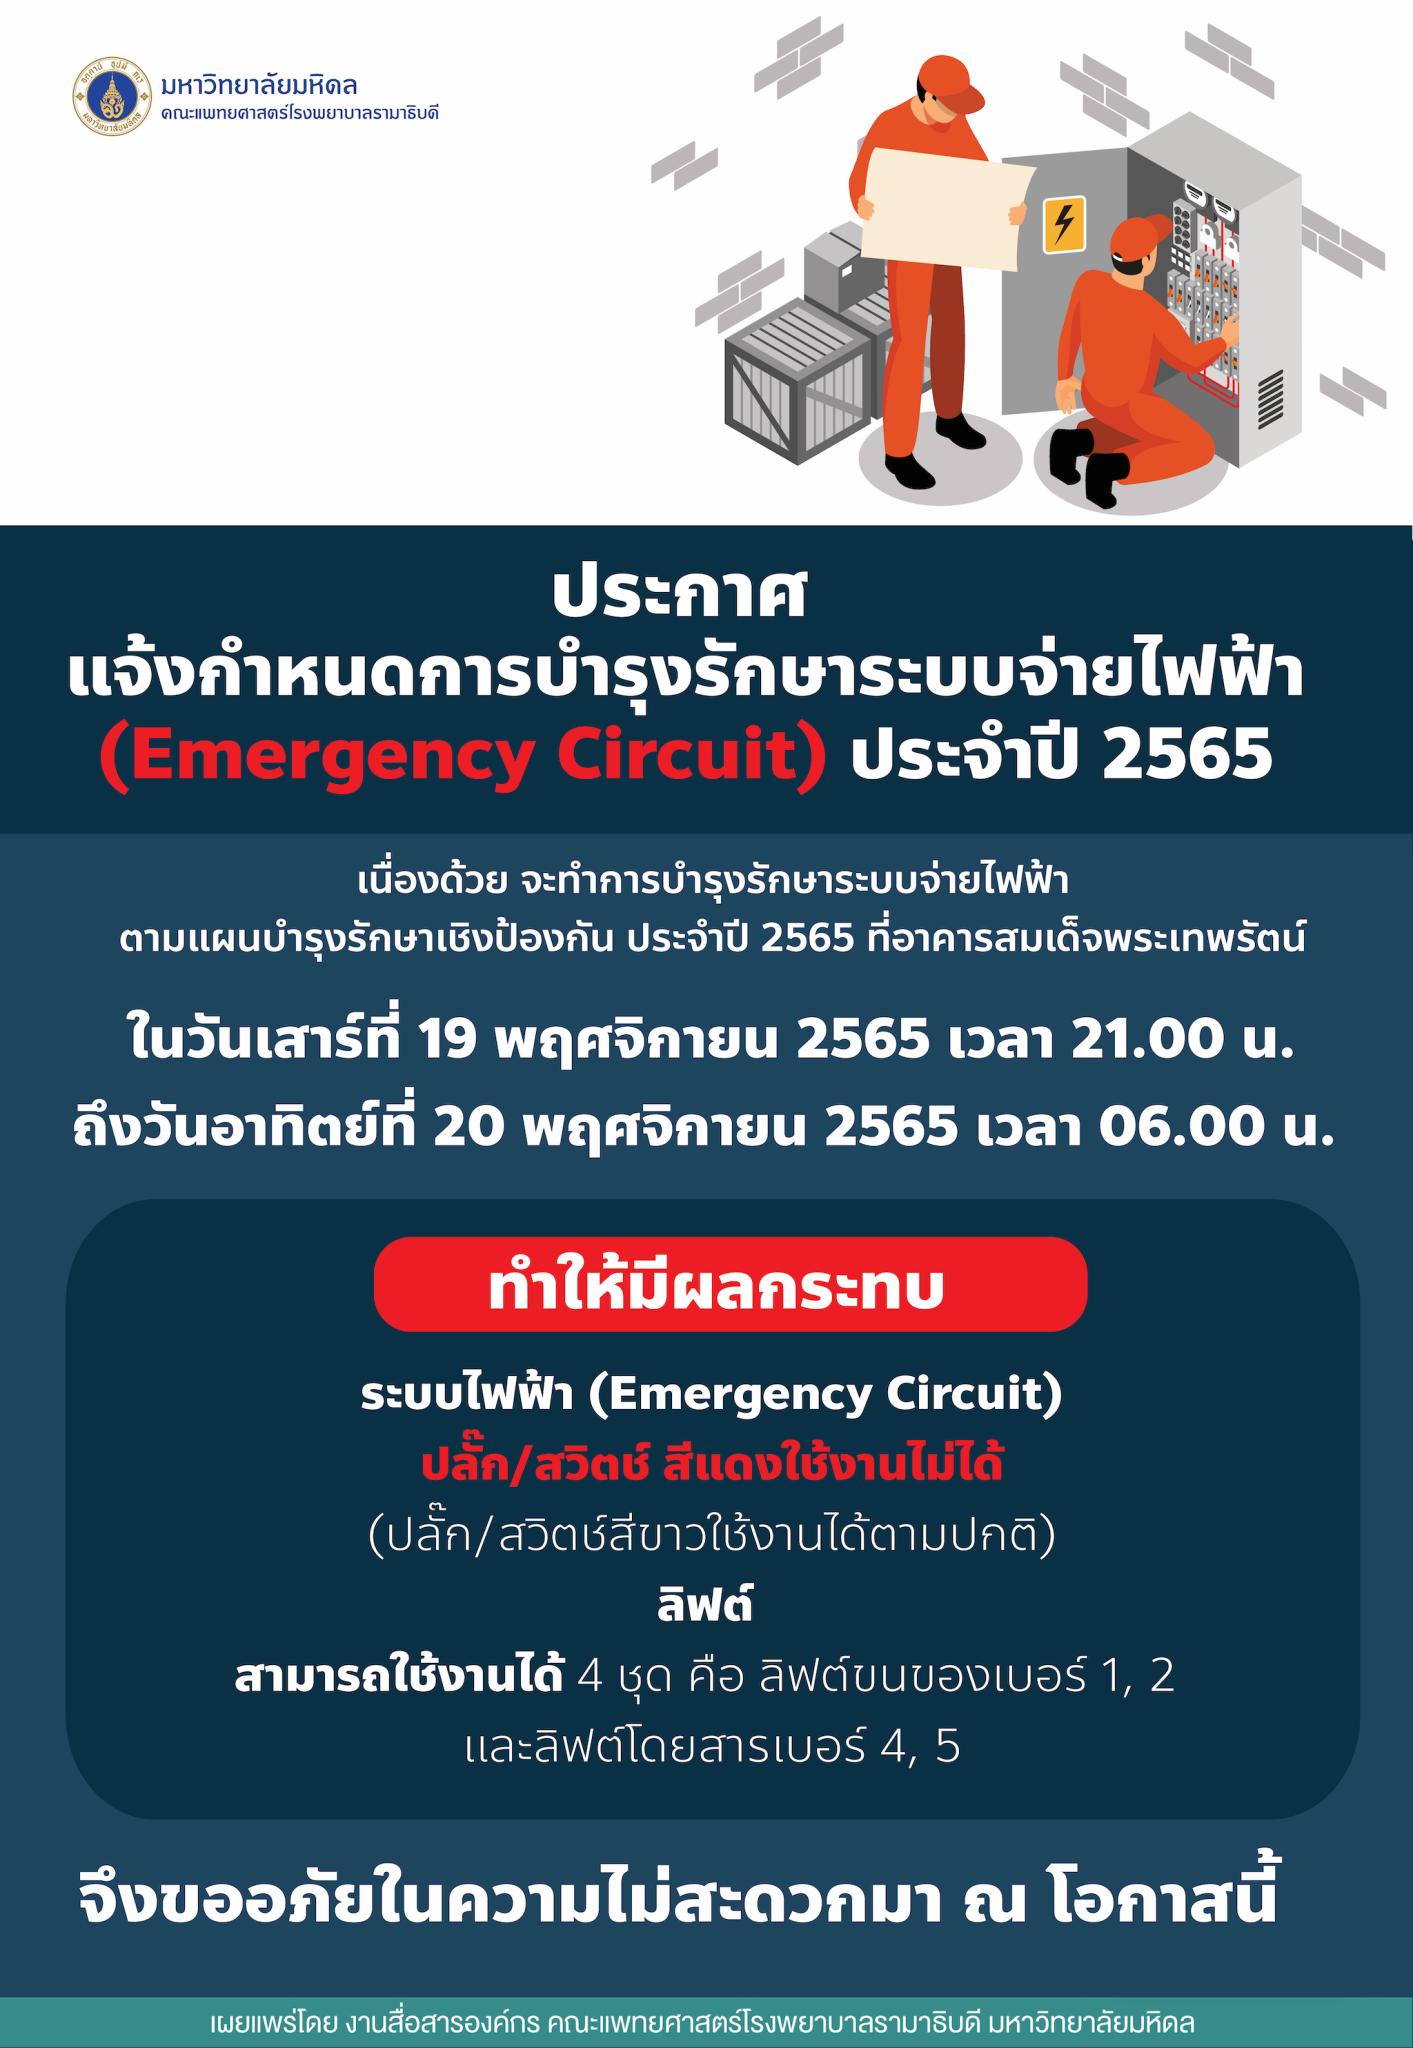 ประกาศ แจ้งกำหนดการบำรุงรักษาระบบจ่ายไฟฟ้า (Emergency Circuit) ประจำปี 2565 ที่อาคารสมเด็จพระเทพรัตน์